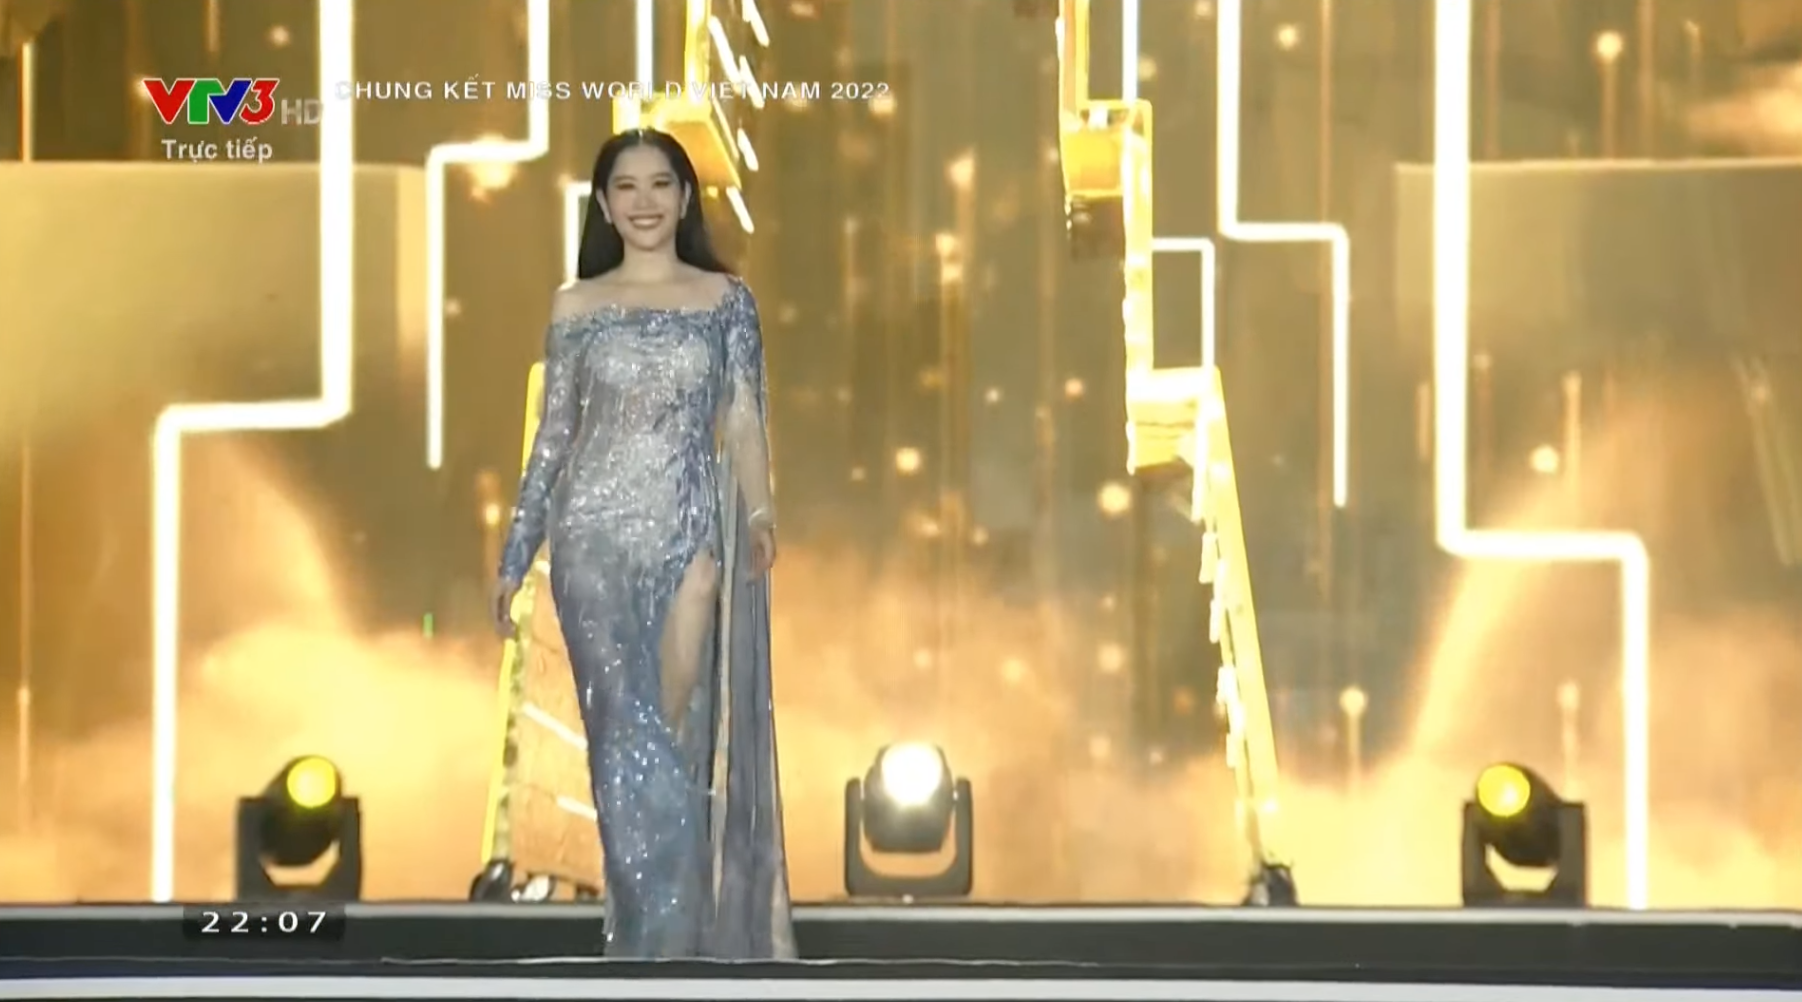 Trực tiếp chung kết Miss World Vietnam 2022: Tân Hoa hậu chính thức thuộc về Huỳnh Nguyễn Mai Phương - 16